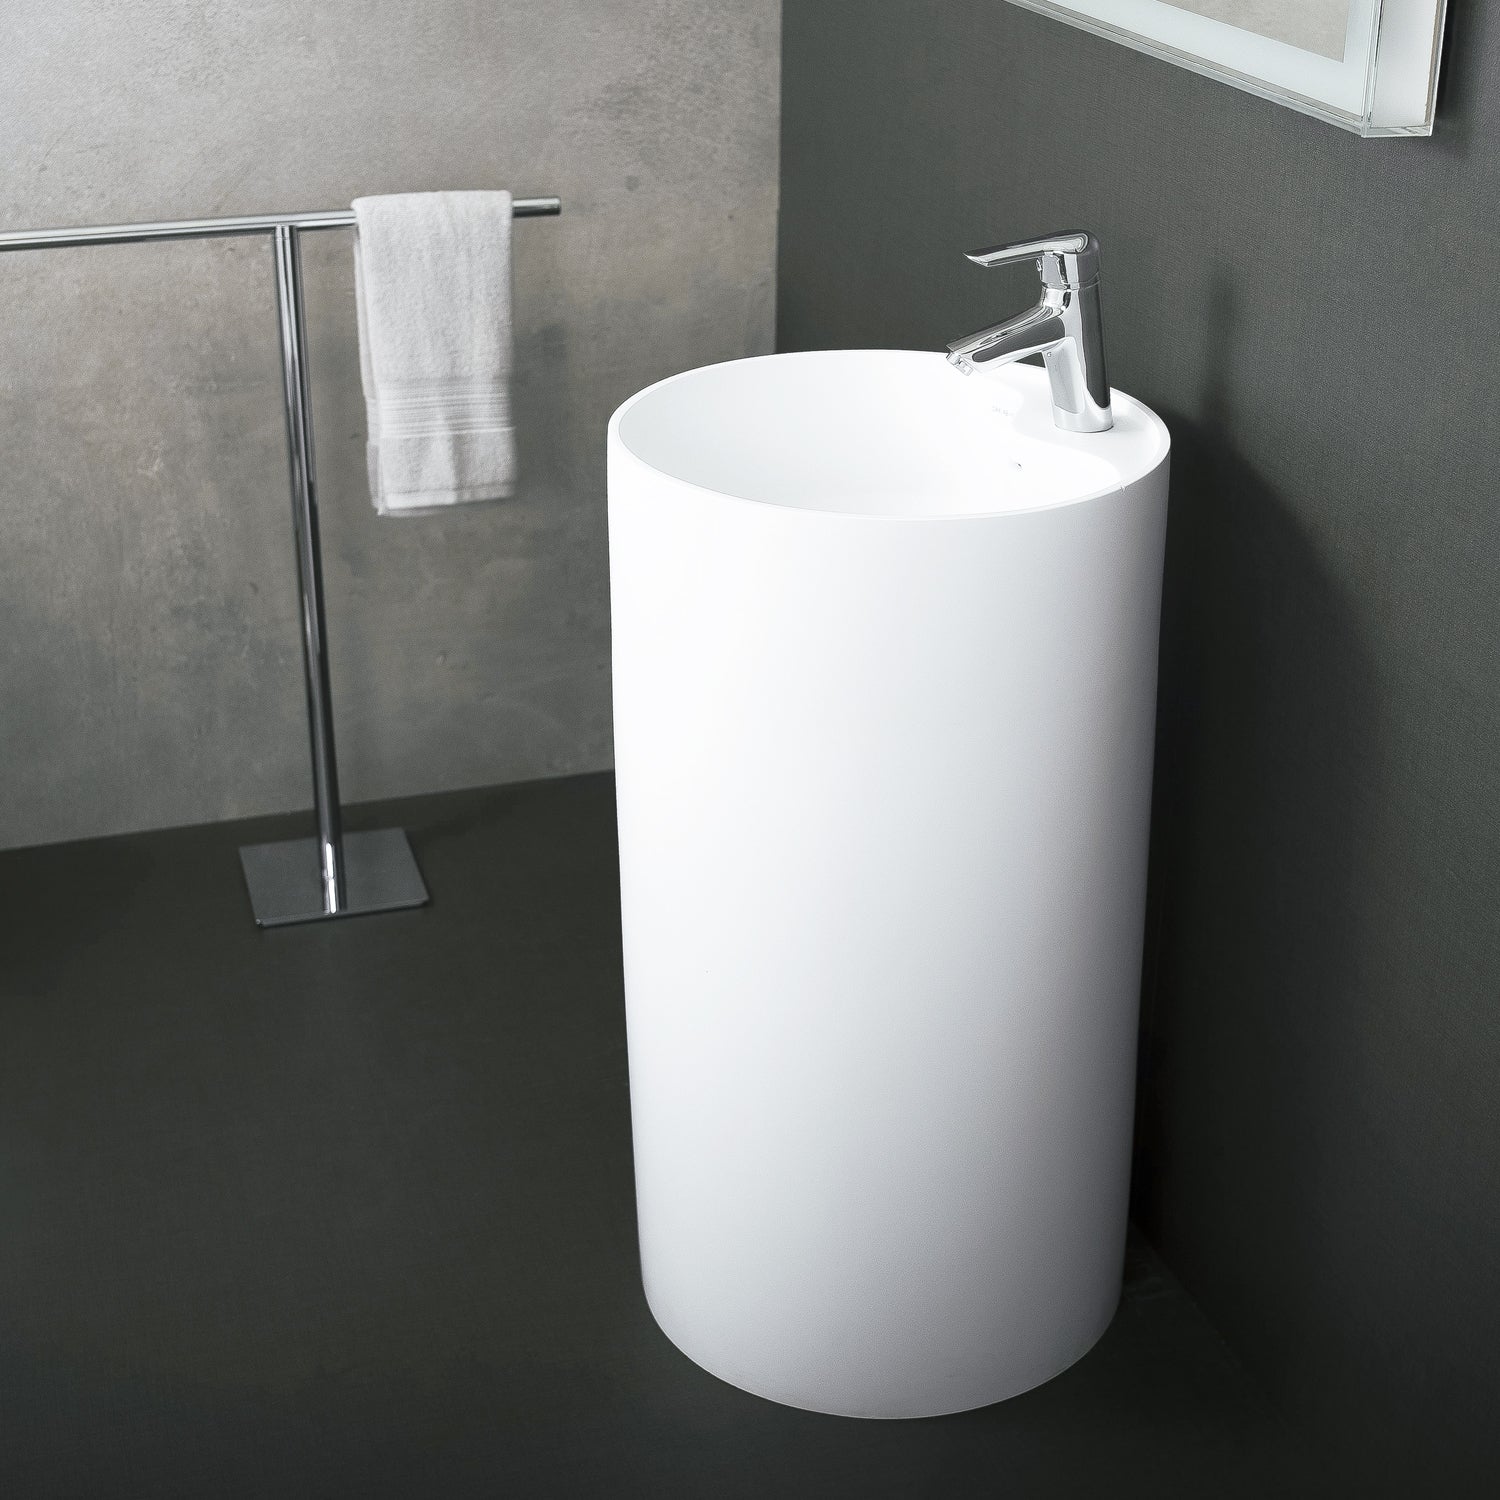 Lavabo de baño independiente de pedestal redondo de superficie sólida DAX, acabado blanco mate, 17-1/2 x 17-1/2 x 31-1/2 pulgadas (DAX-AB-1380)